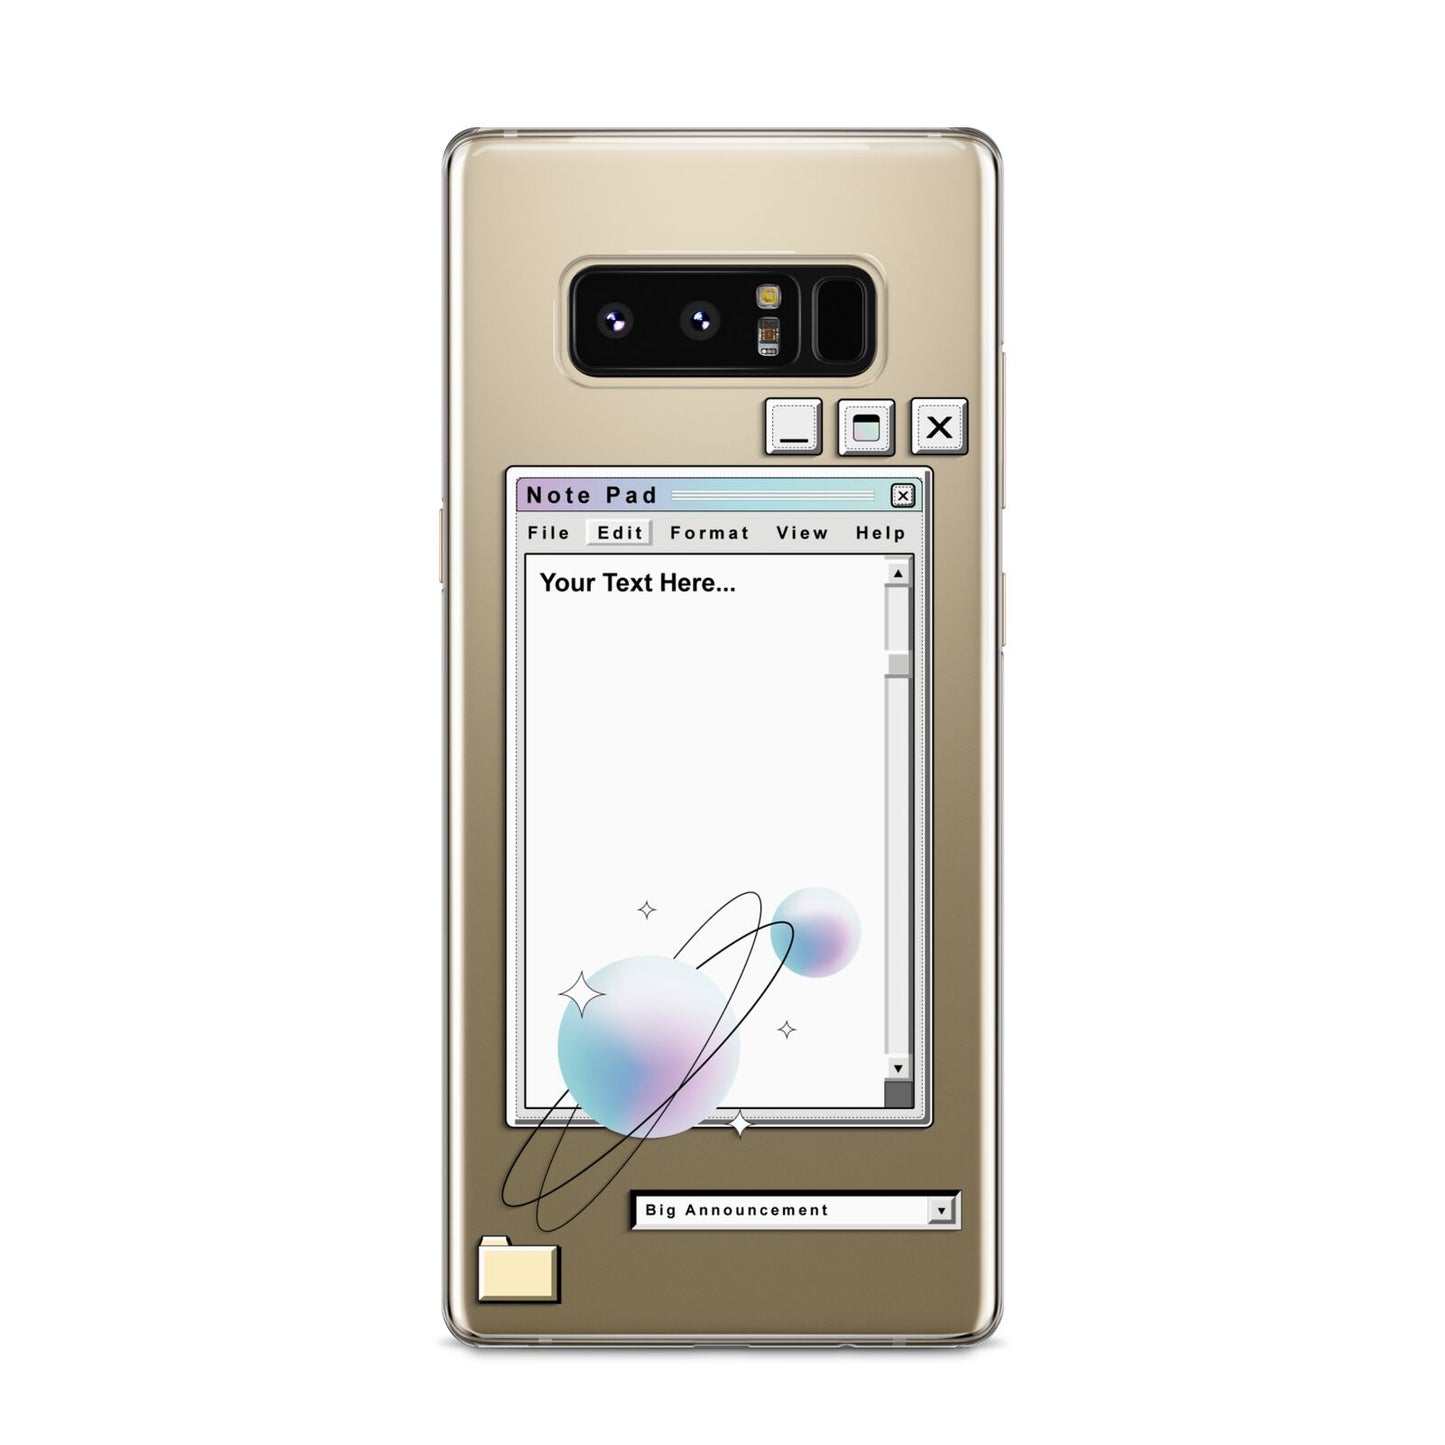 Retro Note Pad Samsung Galaxy S8 Case